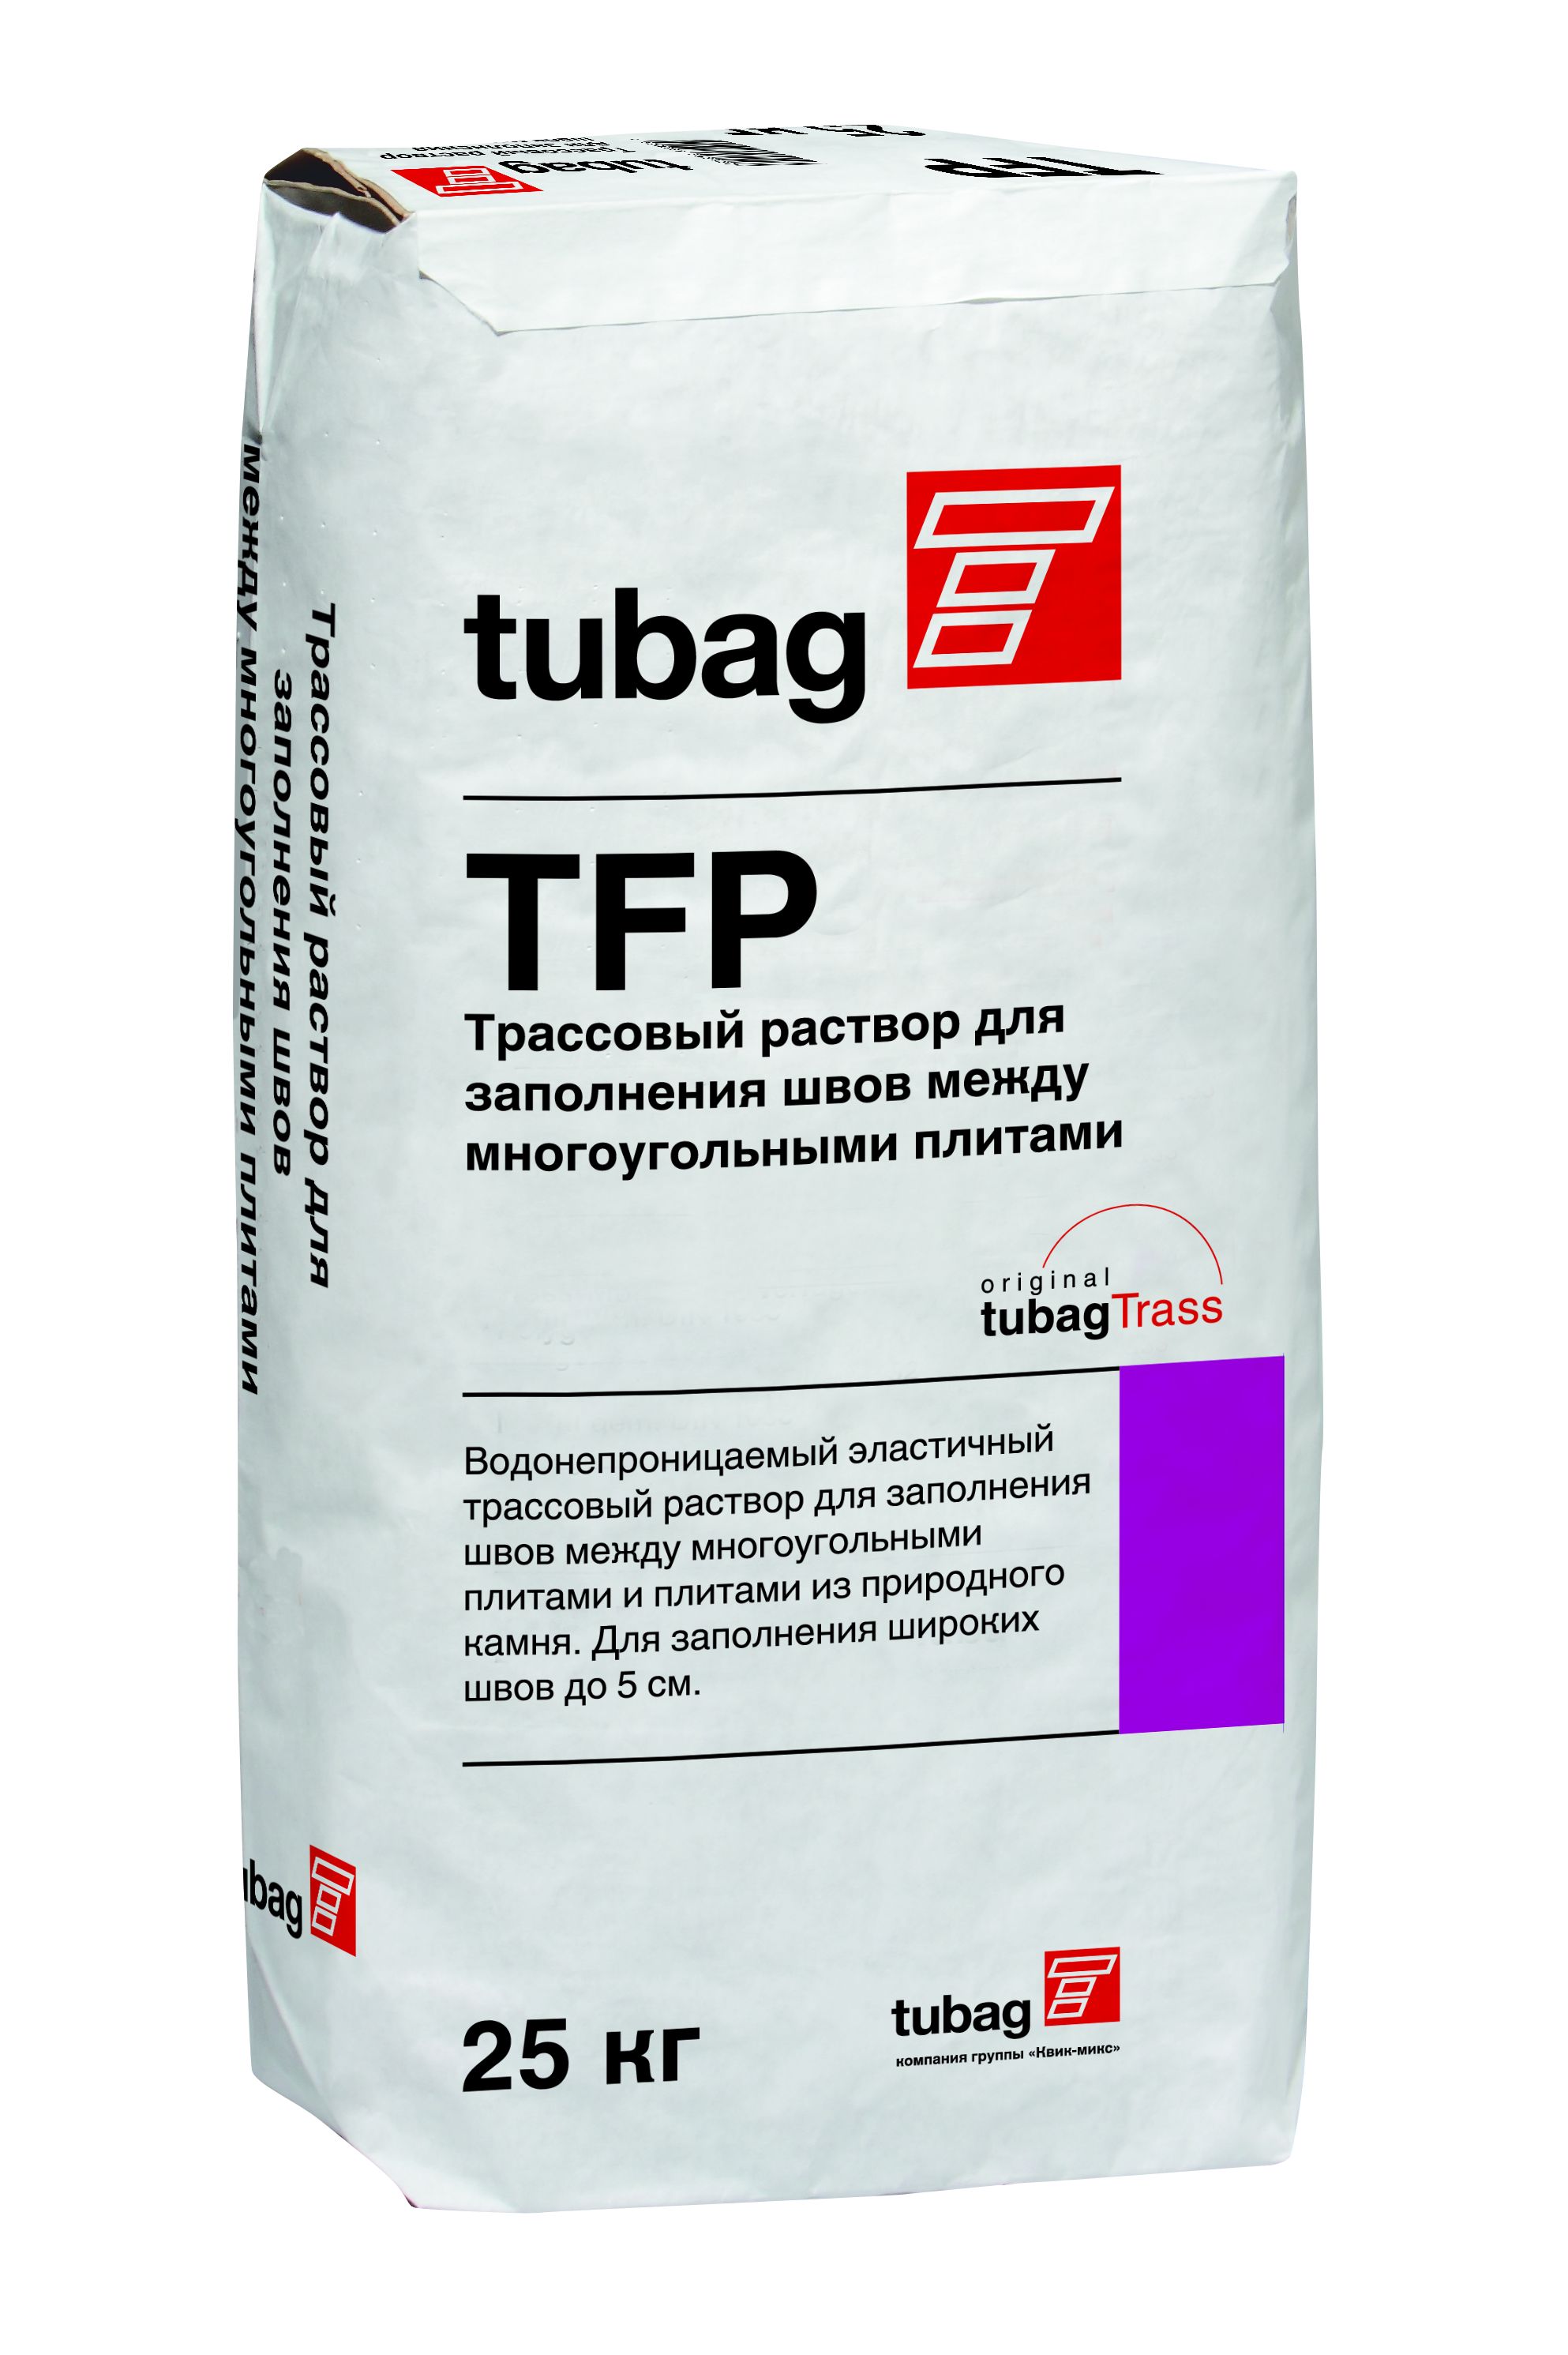 Трассовый раствор для заполнения швов многоугольных плит TFP антрацит